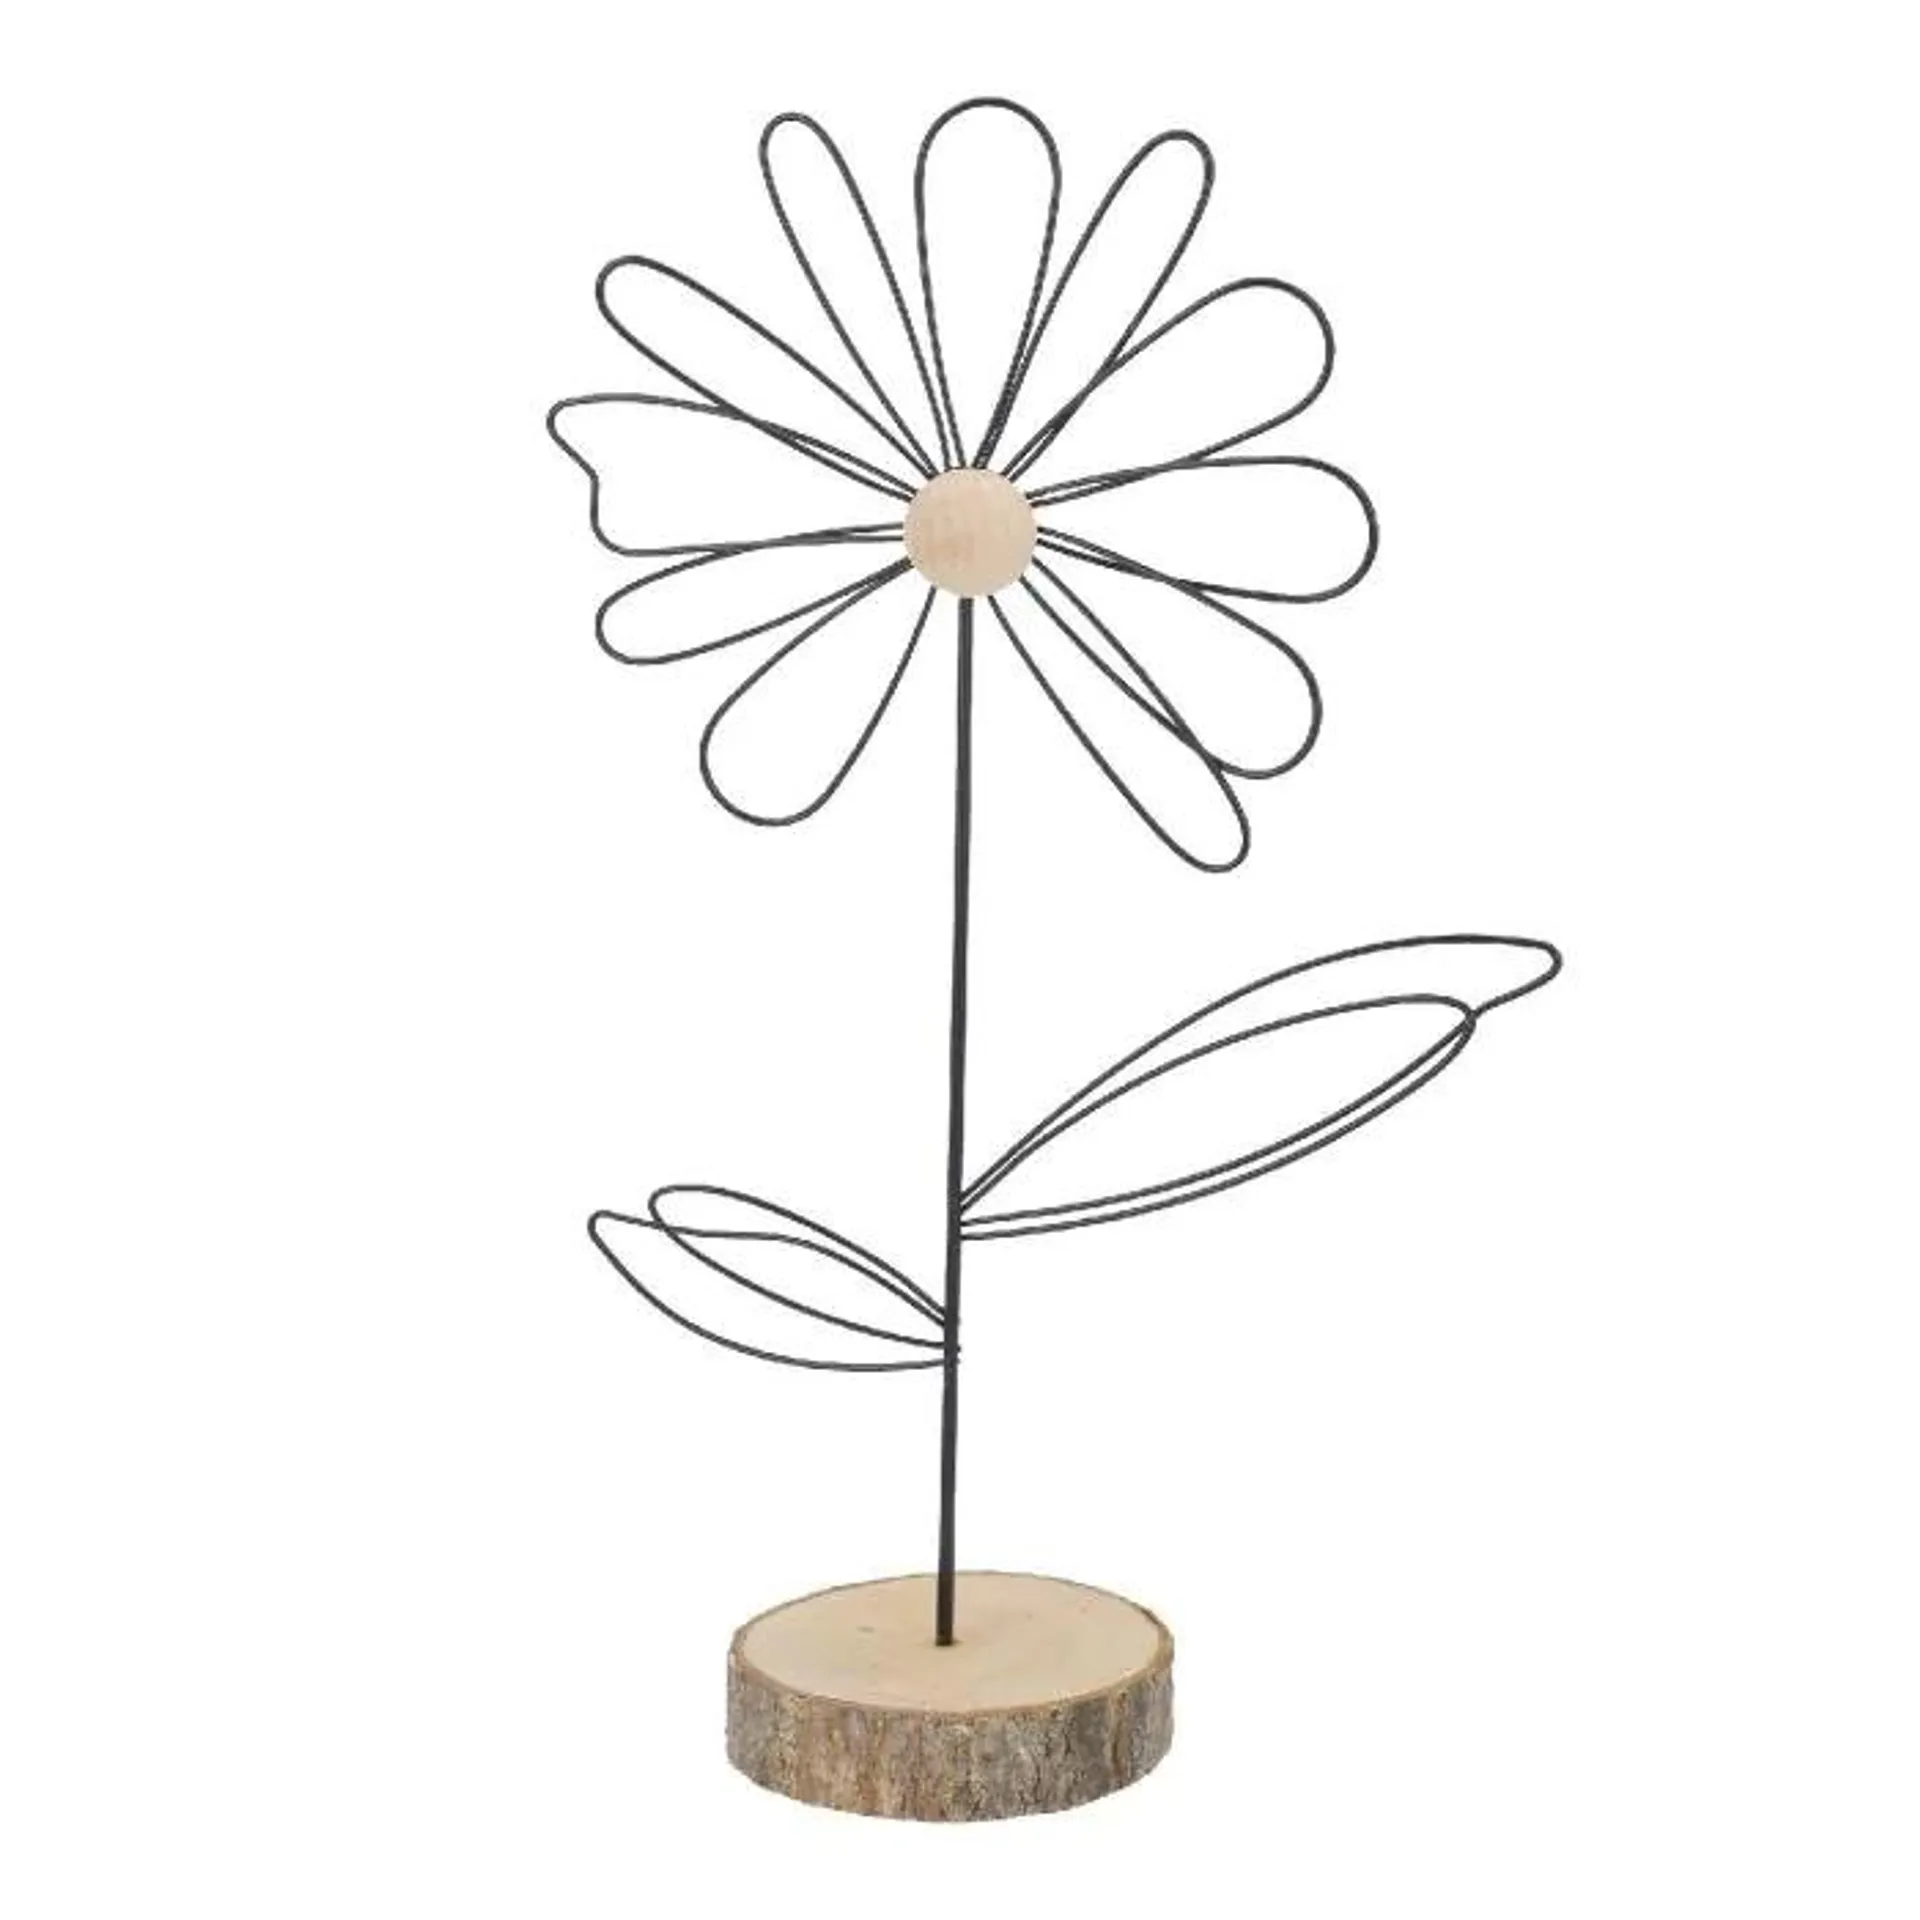 Metall-Blume auf Holzfuß, schwarz/natur, 32 cm